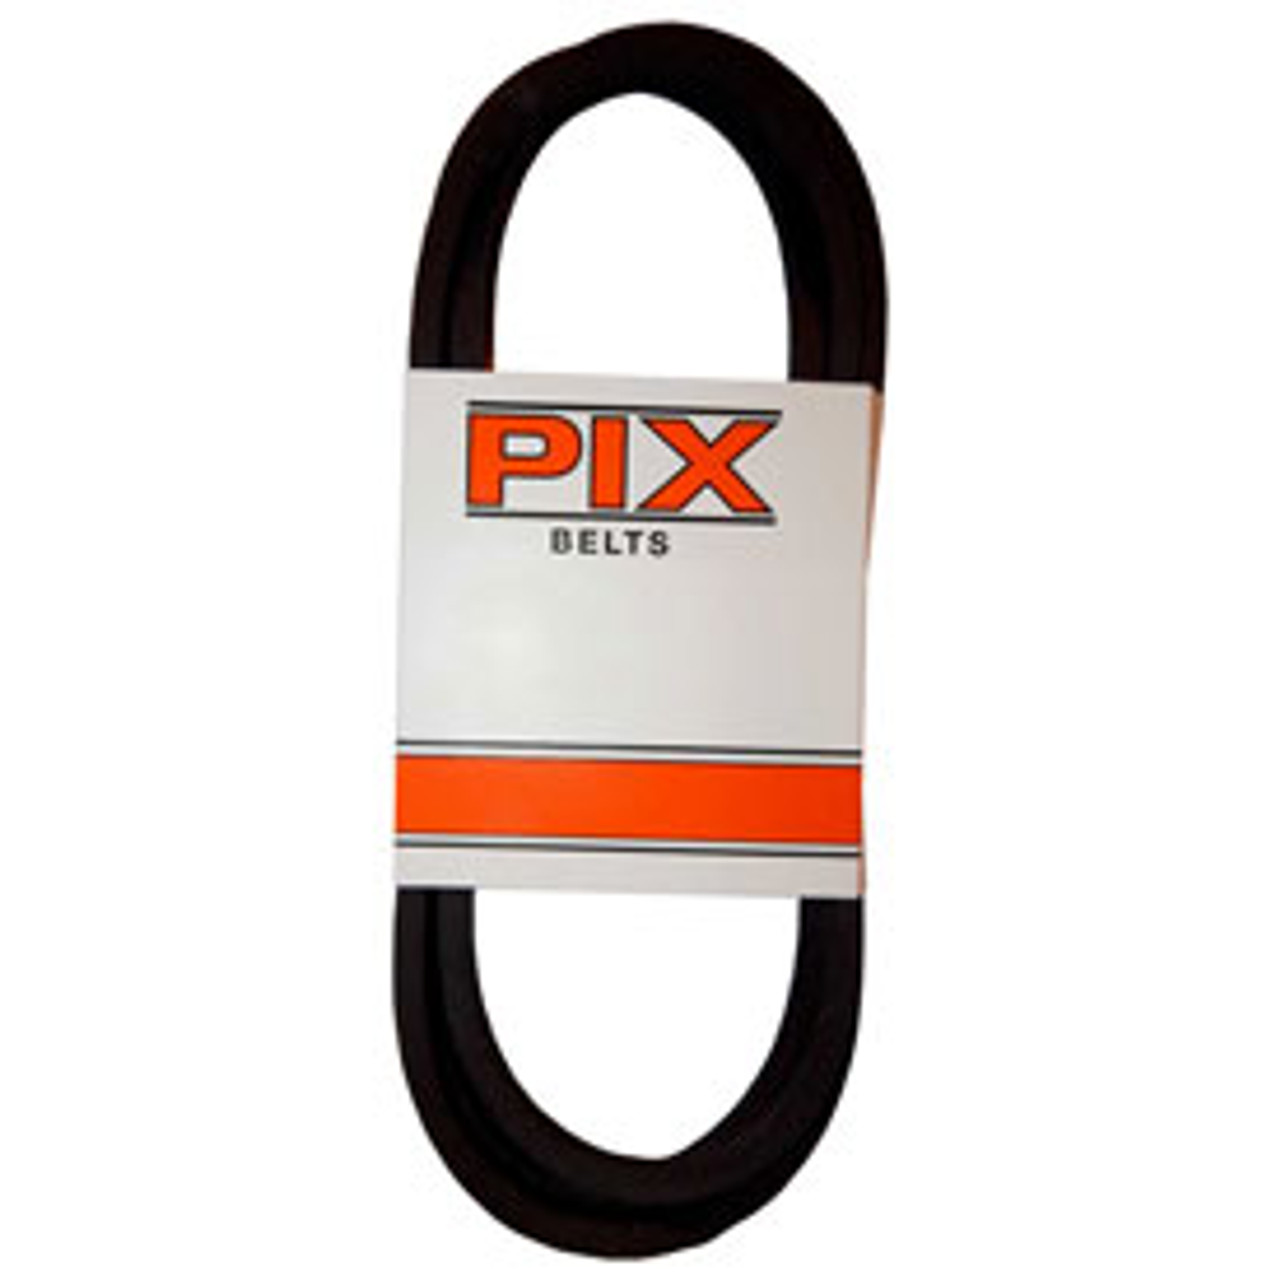 PIX B23 Classical V Belt  21/32" X 26"